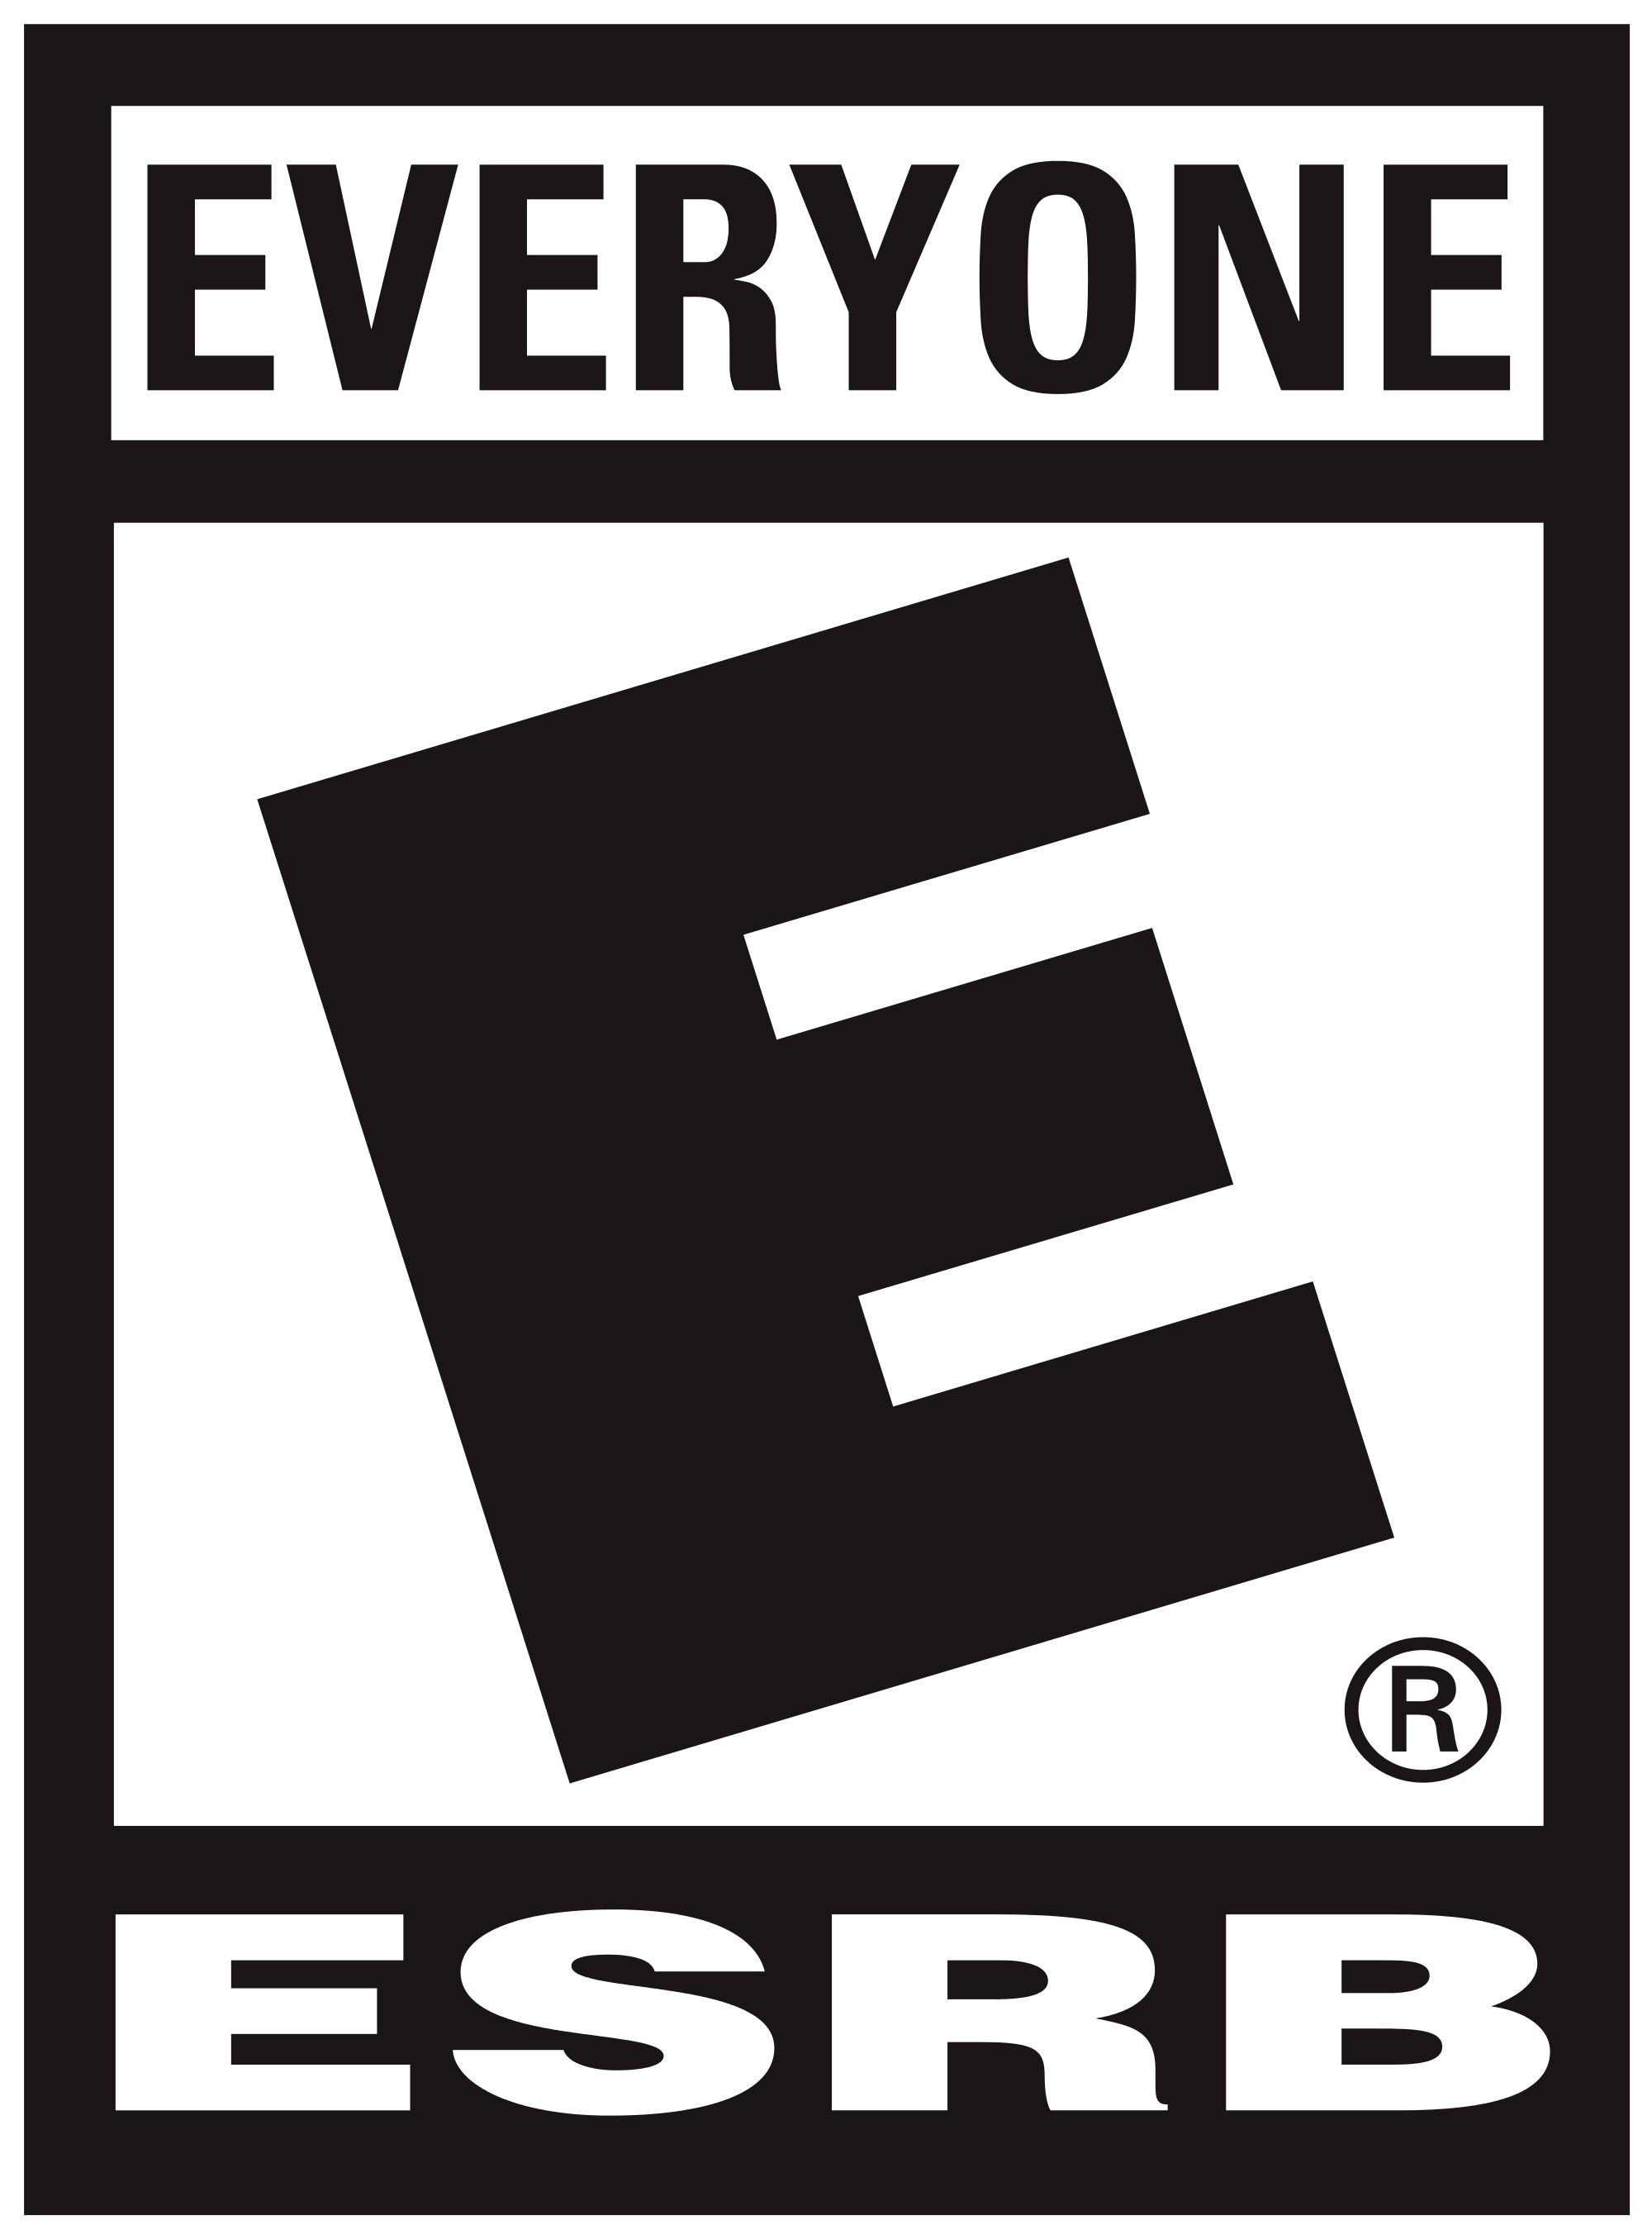 Everyone Logo - ESRB 2013 Everyone.svg